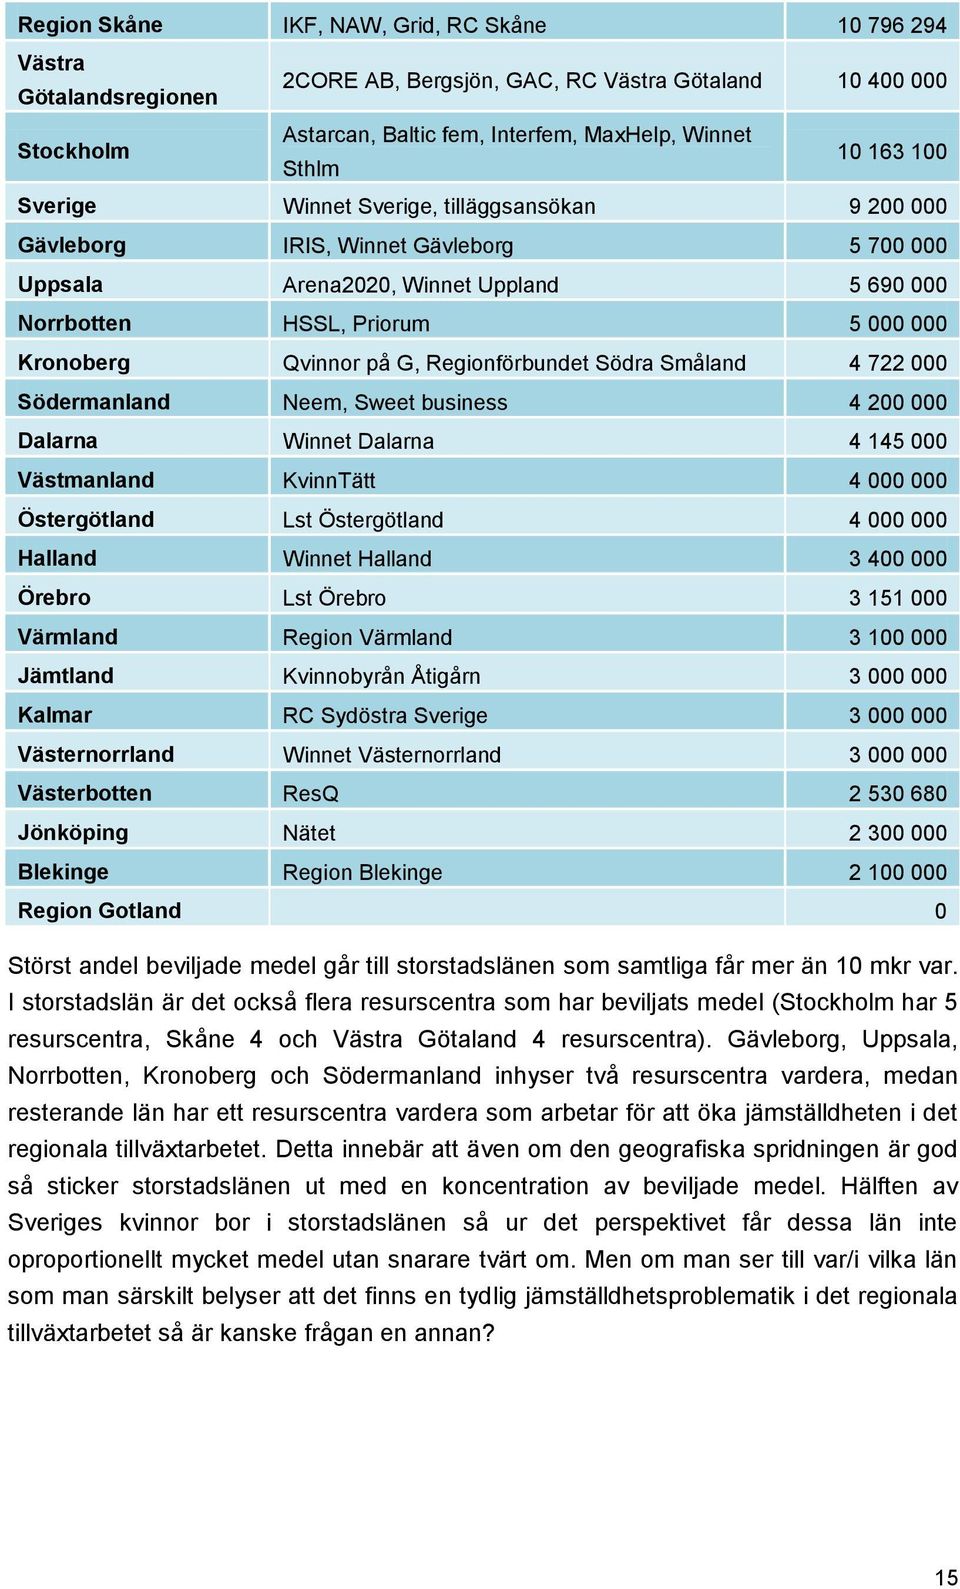 Regionförbundet Södra Småland 4 722 000 Södermanland Neem, Sweet business 4 200 000 Dalarna Winnet Dalarna 4 145 000 Västmanland KvinnTätt 4 000 000 Östergötland Lst Östergötland 4 000 000 Halland